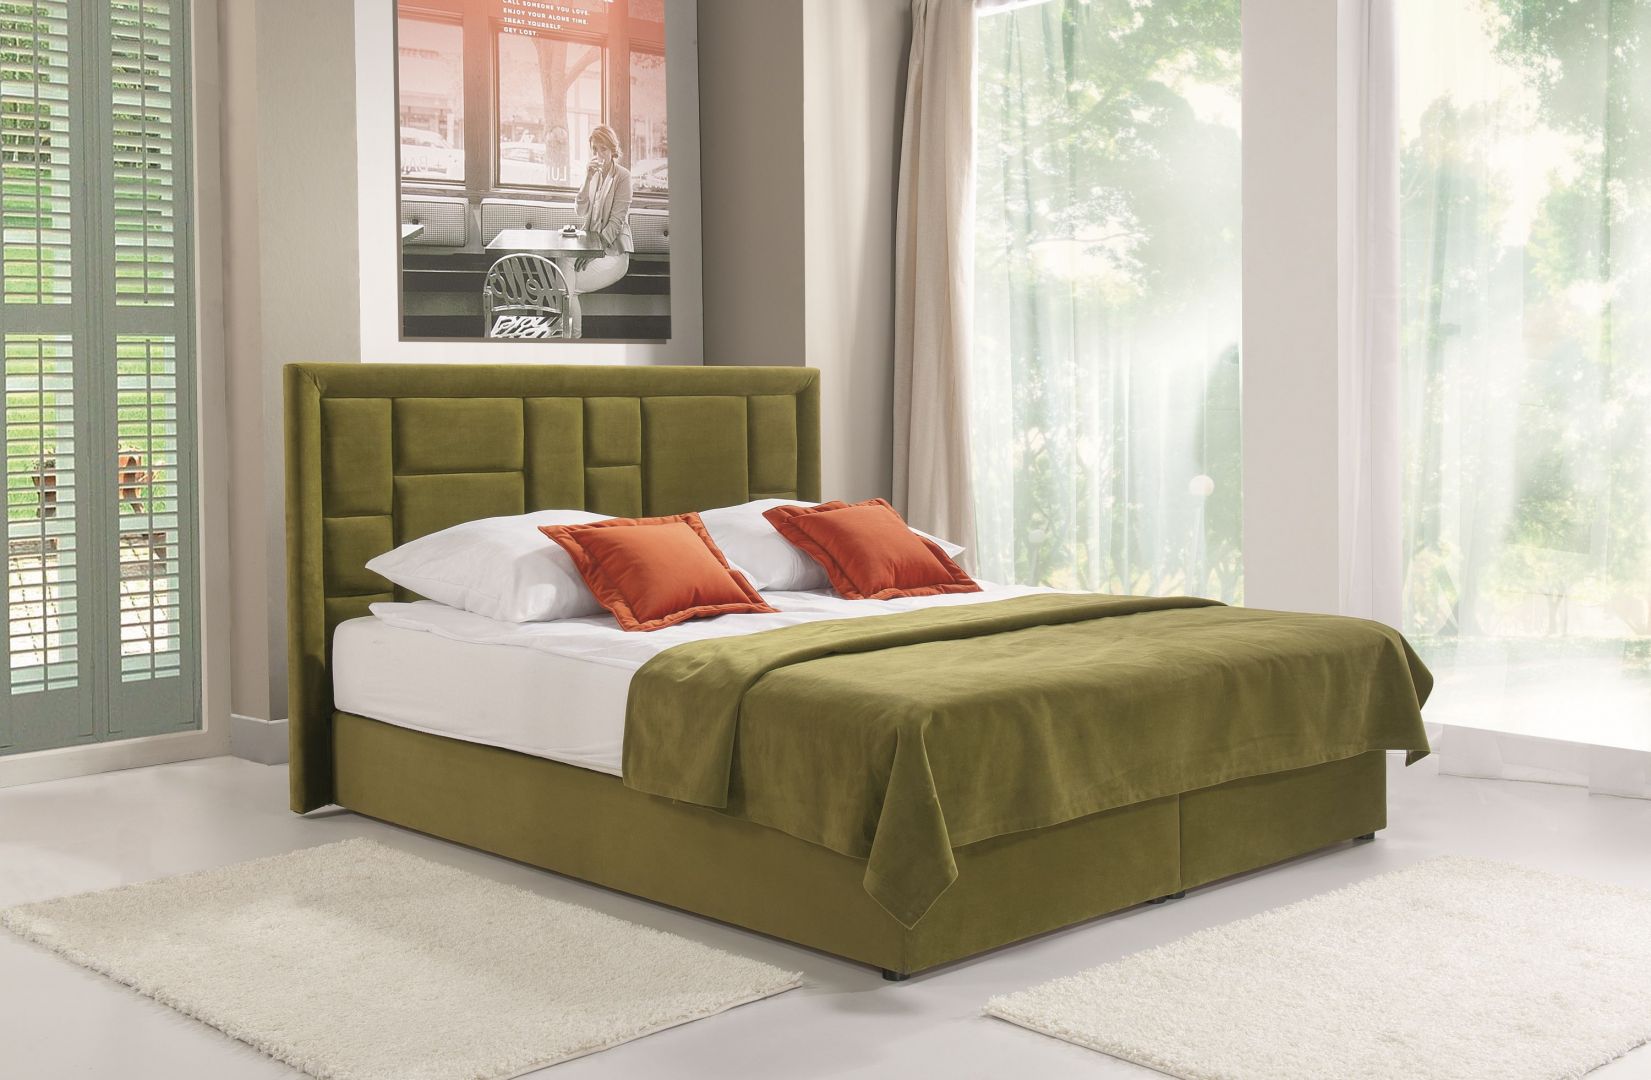 Łóżko Linea w pięknym kolorze zielonym. Stonowana kolorystyka pozwoli urządzić piękną sypialnię w kolorach ziemi. Fot. Libro